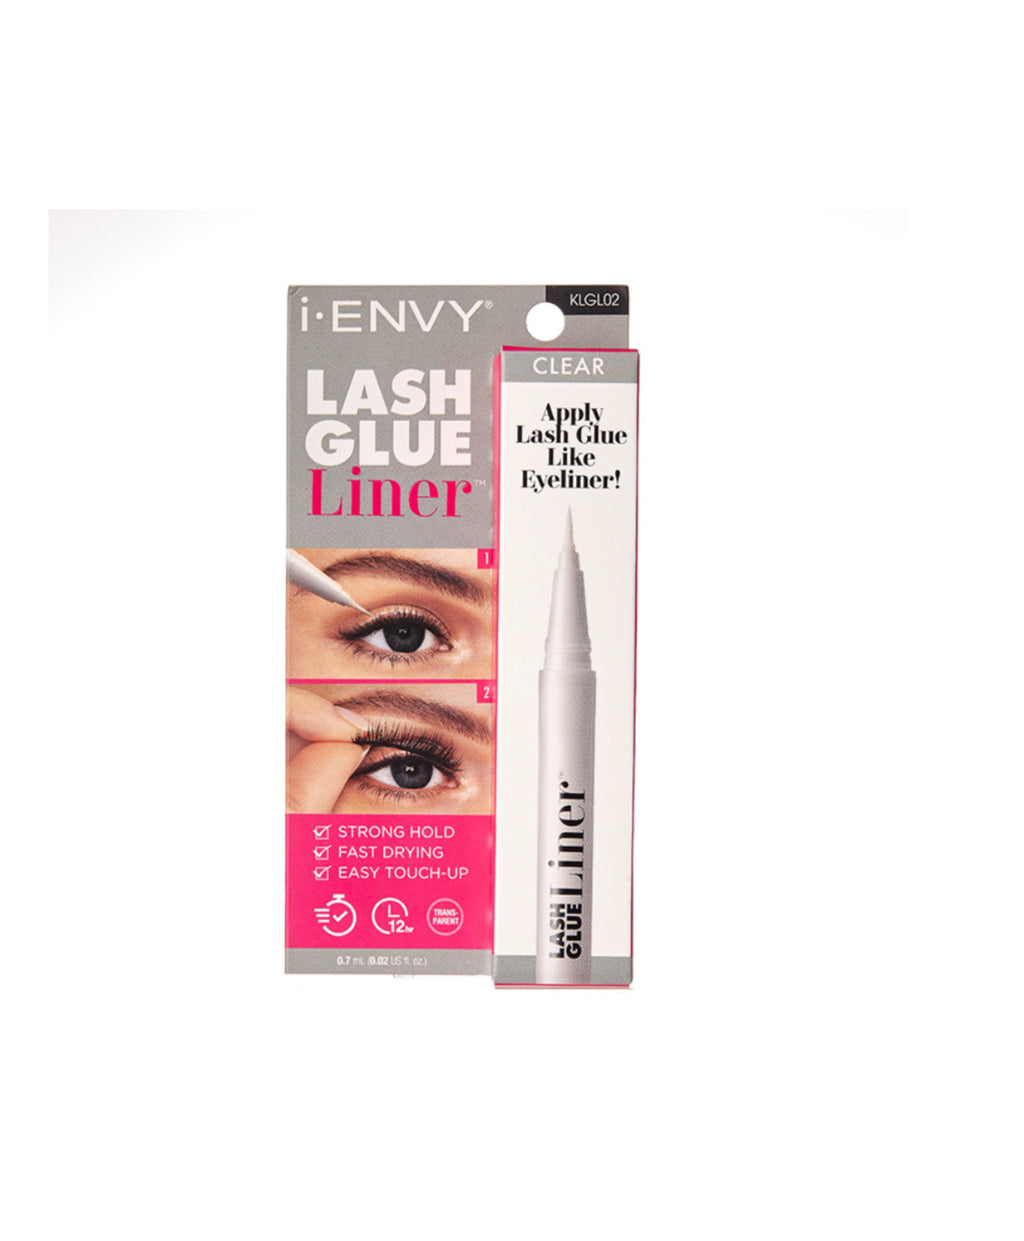 i-ENVY Lash Glue Liner – Clear